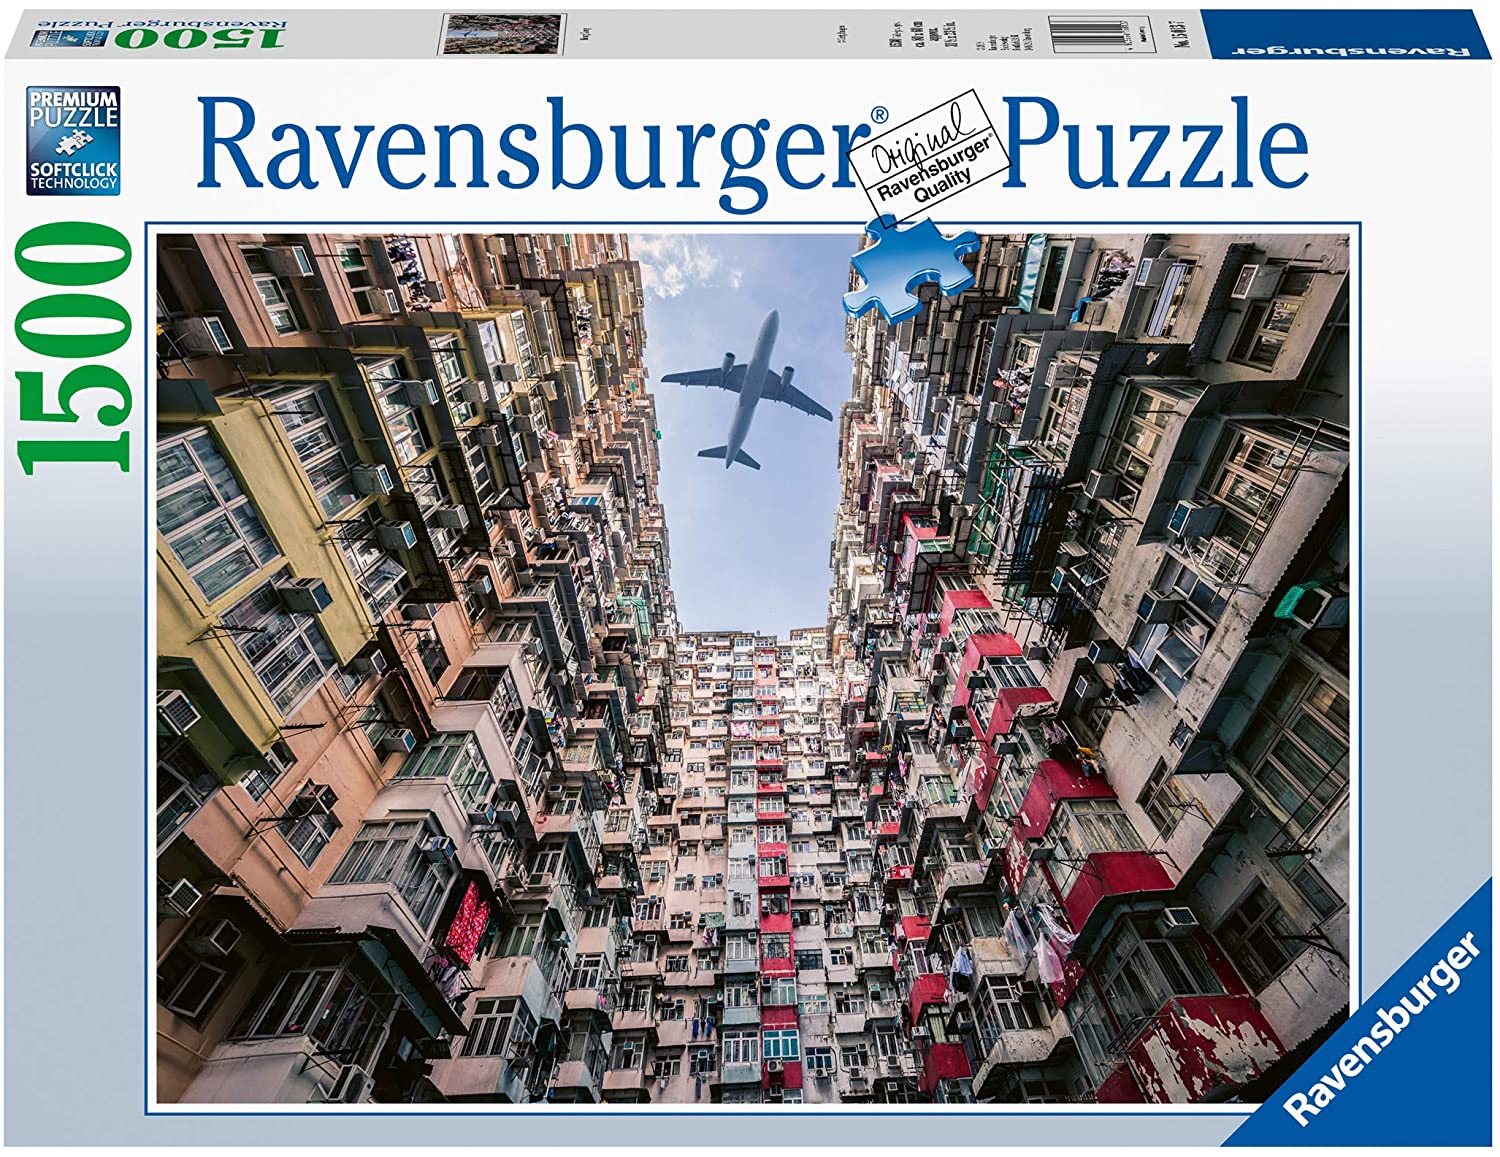 Ravensburger 15013 Jigsaw Puzzle Hong Kong 1500 Pieces